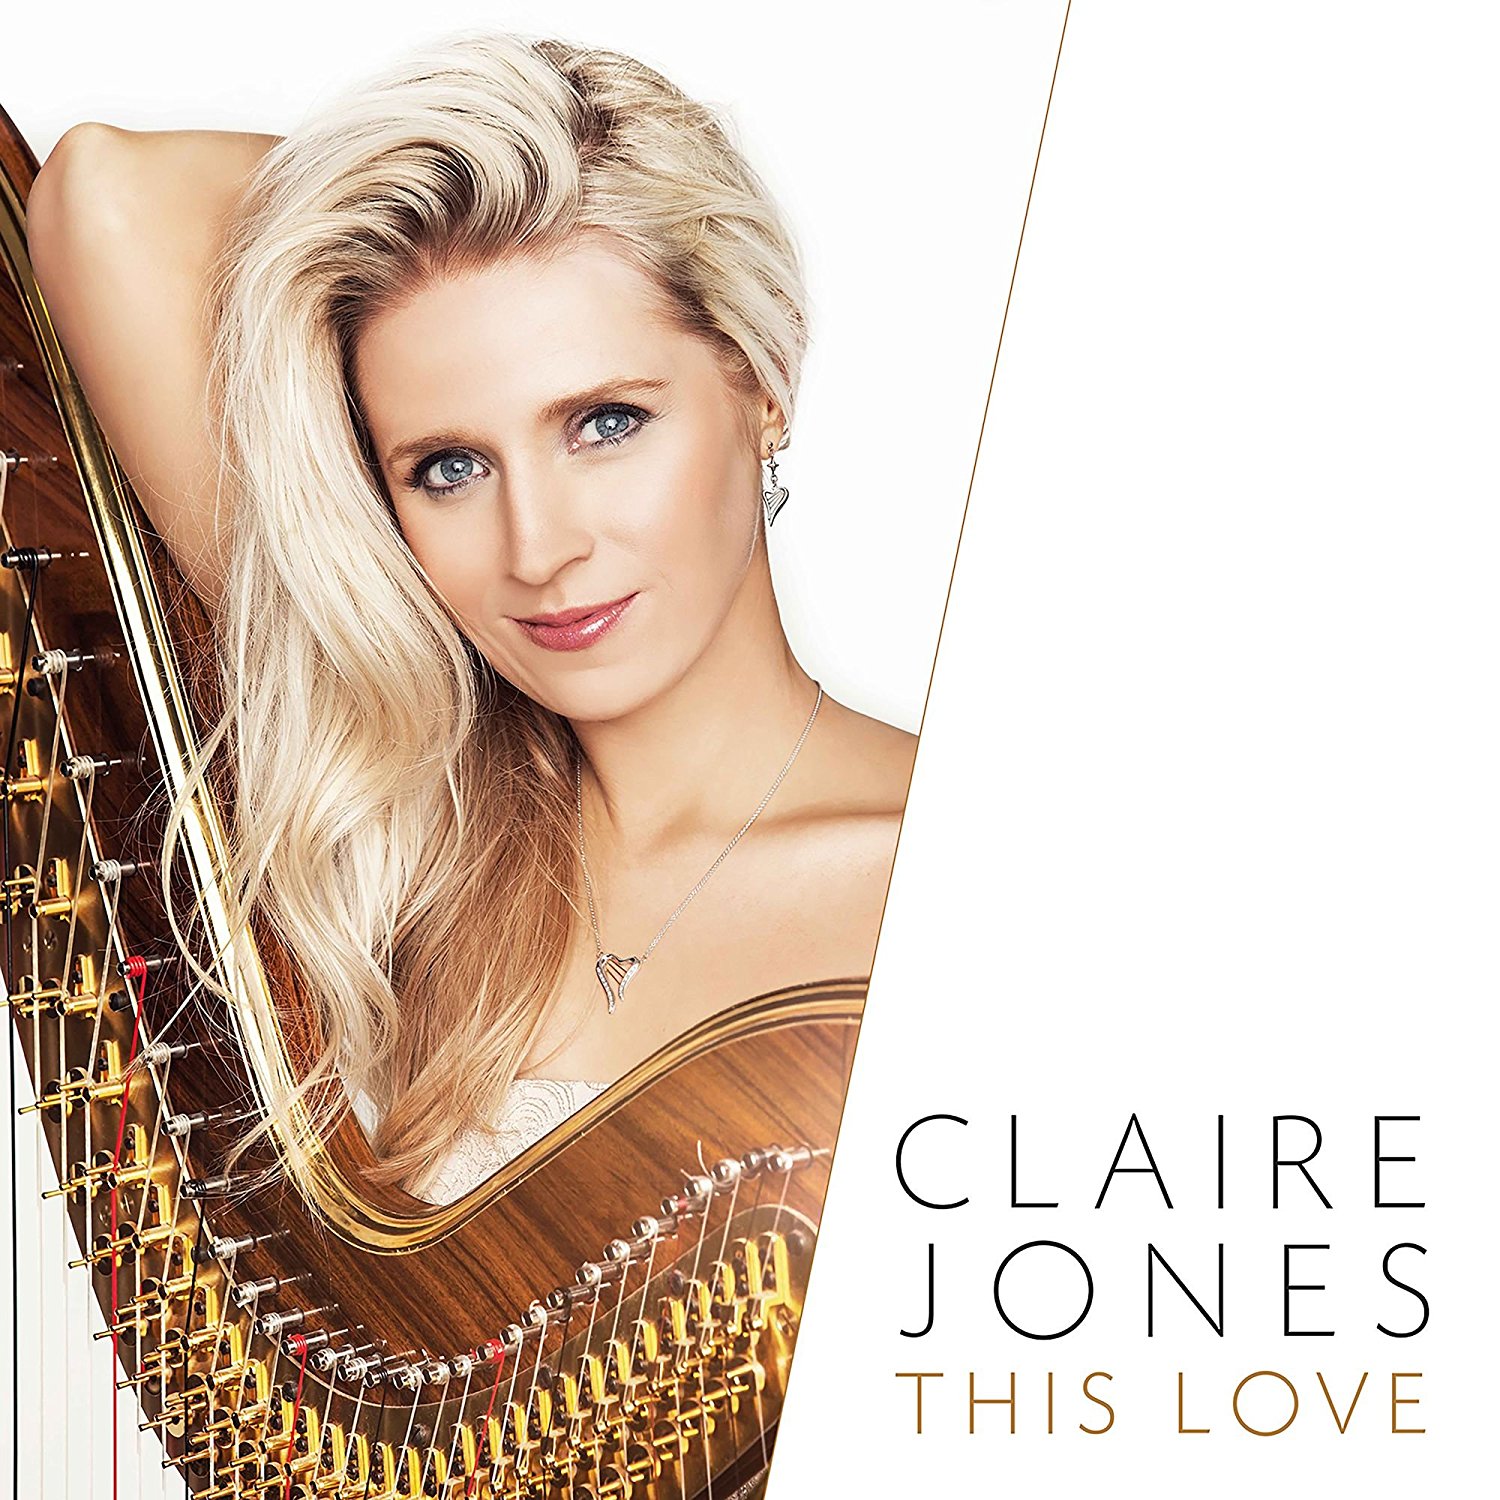 Claire Jones This Love